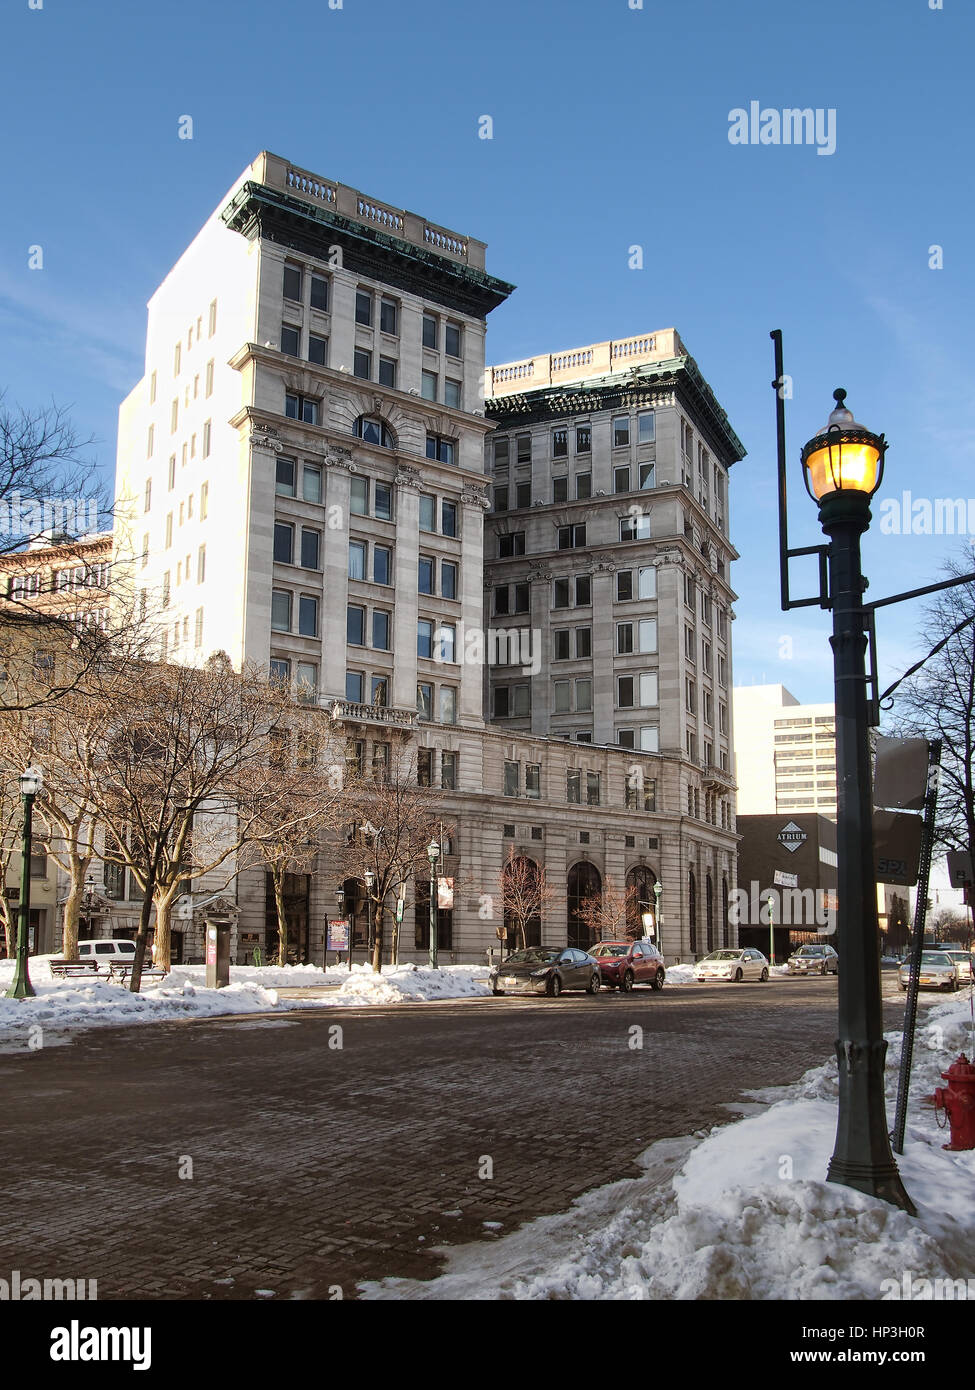 Syracuse, New York, USA. 18 février 2017,. Le M&T Bank Building , officiellement le comté d'Onondaga Savings Bank, construit en 1896. Une fois le canal Érié ran i Banque D'Images